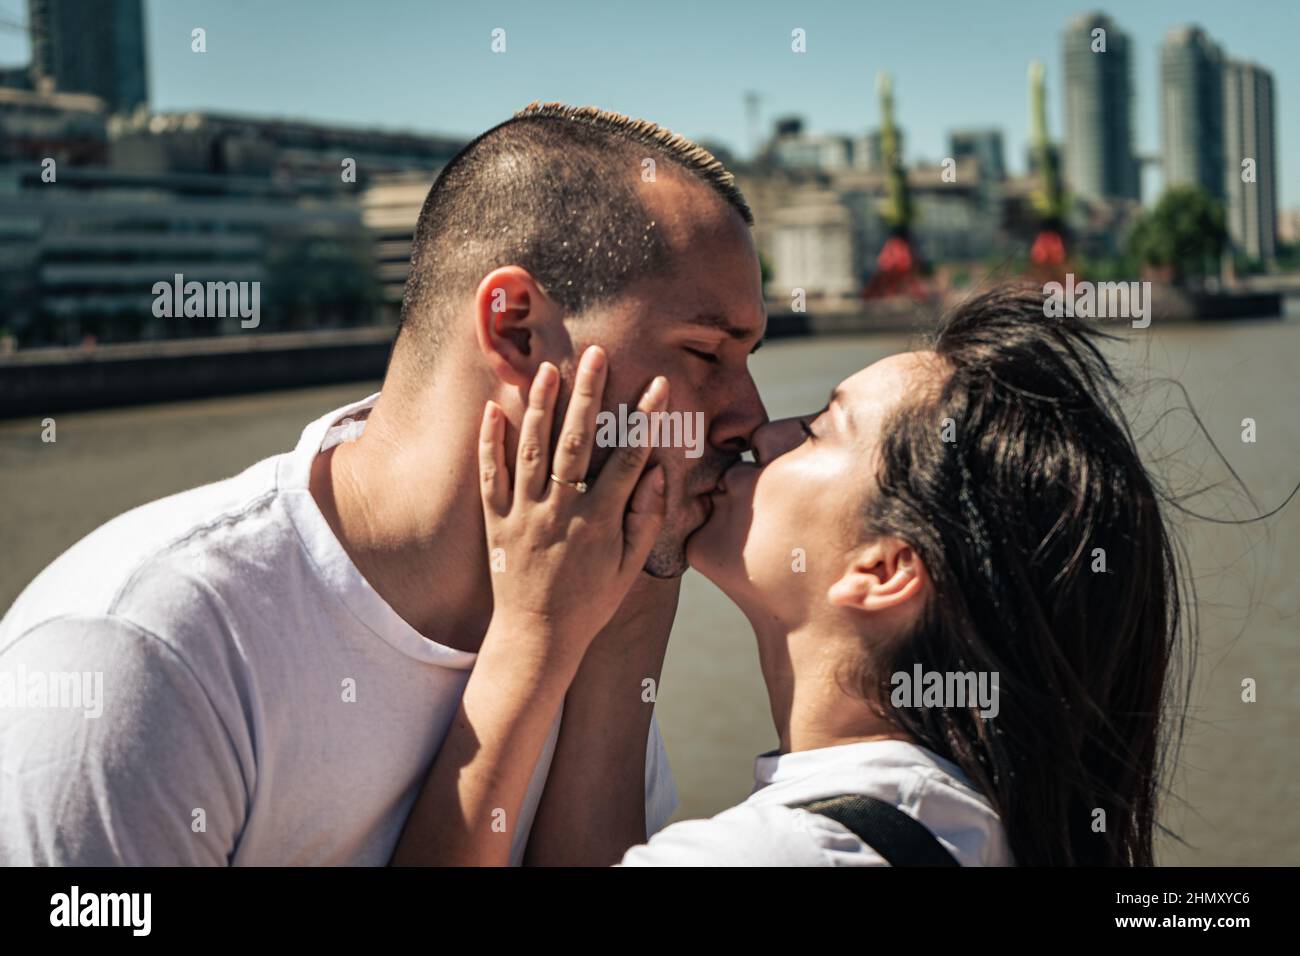 Un jeune couple latin amoureux s'embrassant. Concept d'amour, couple, bonheur. Banque D'Images